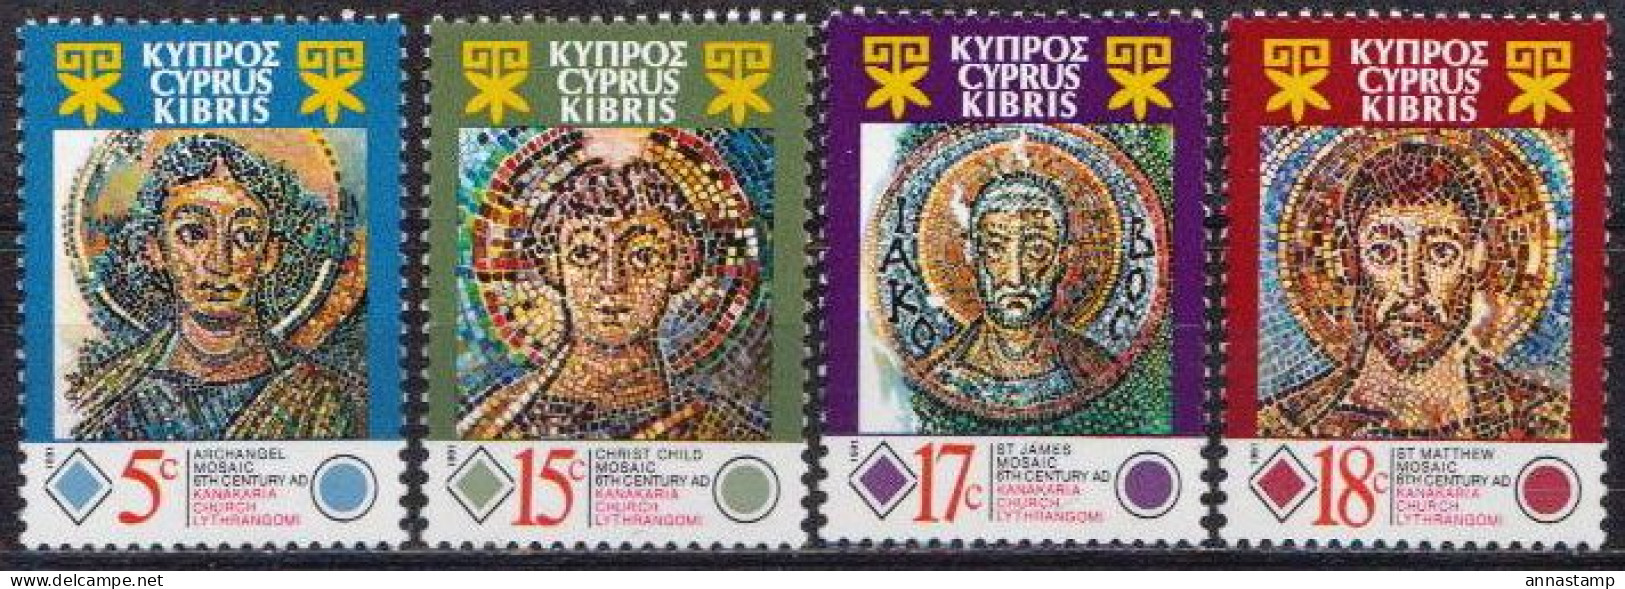 Cyprus MNH Set - Religious